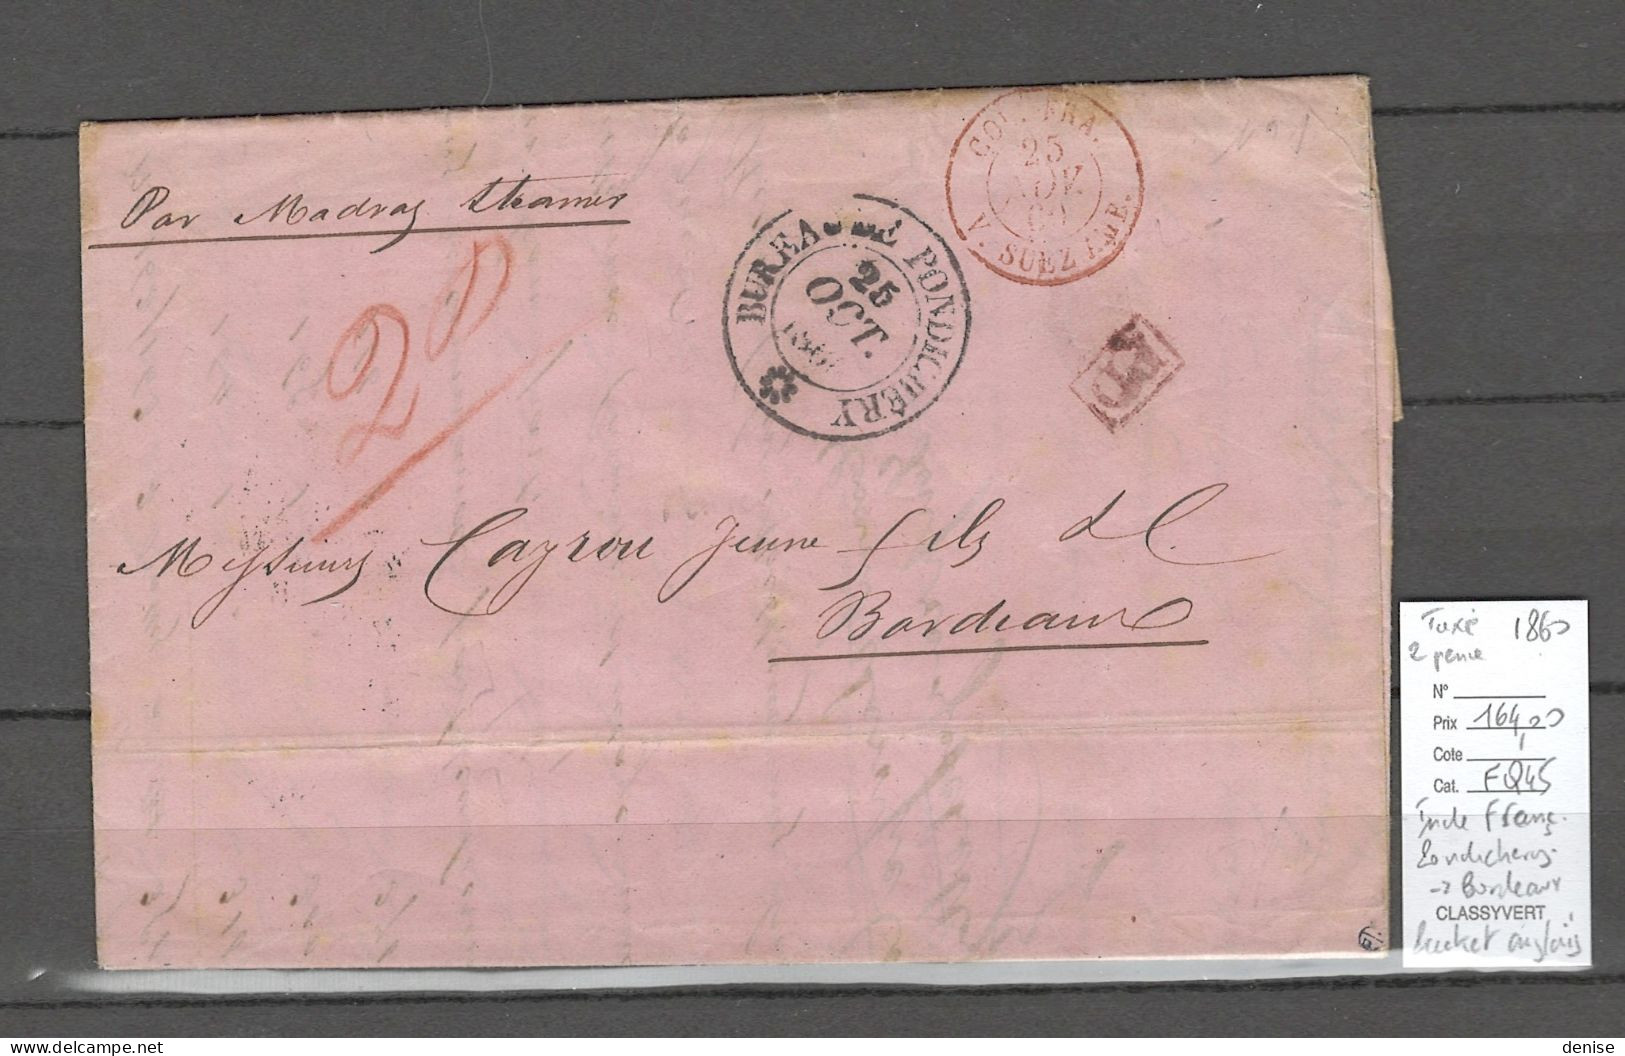 Inde Française - Lettre De Pondichery 1860 - Pour Bordeaux Via Packet Anglais -  Madras Et Suez - Covers & Documents